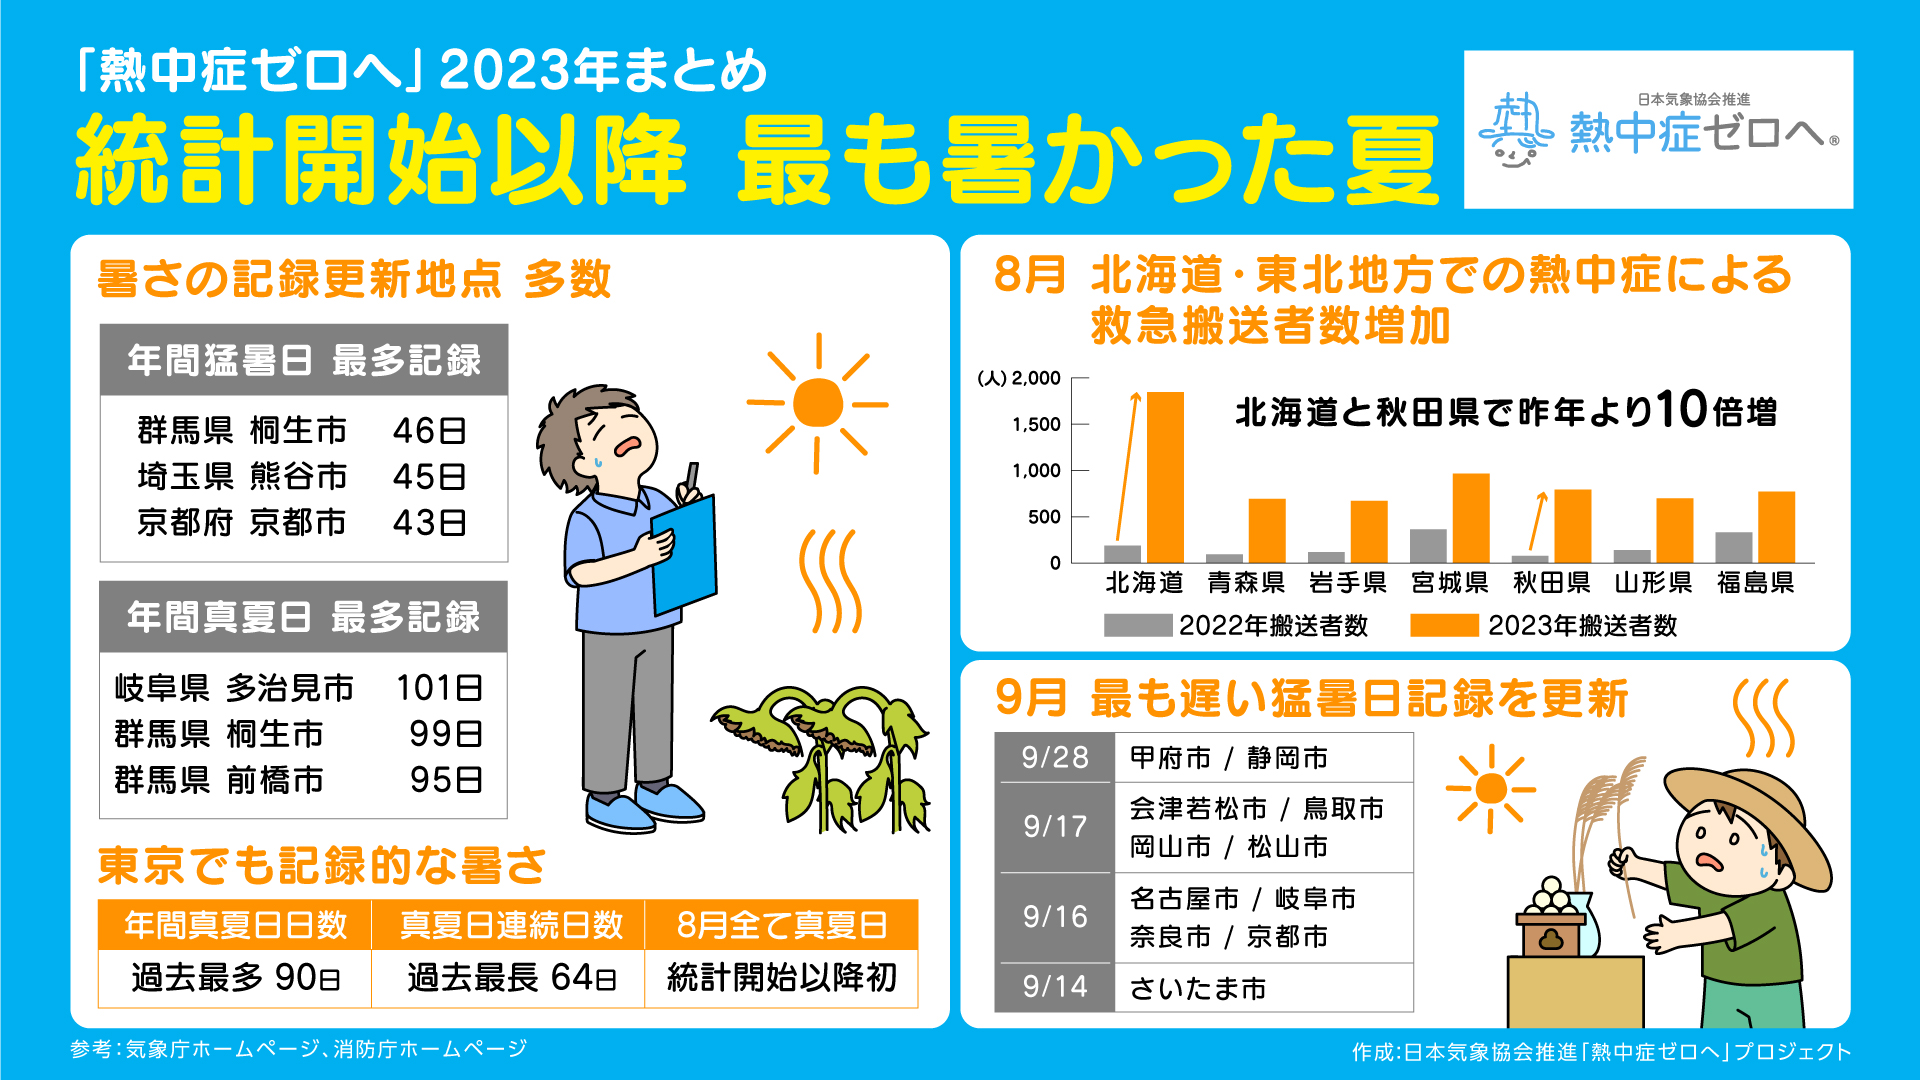 【熱中症ゼロへ】2023年の熱中症にまつわる3大ニュース